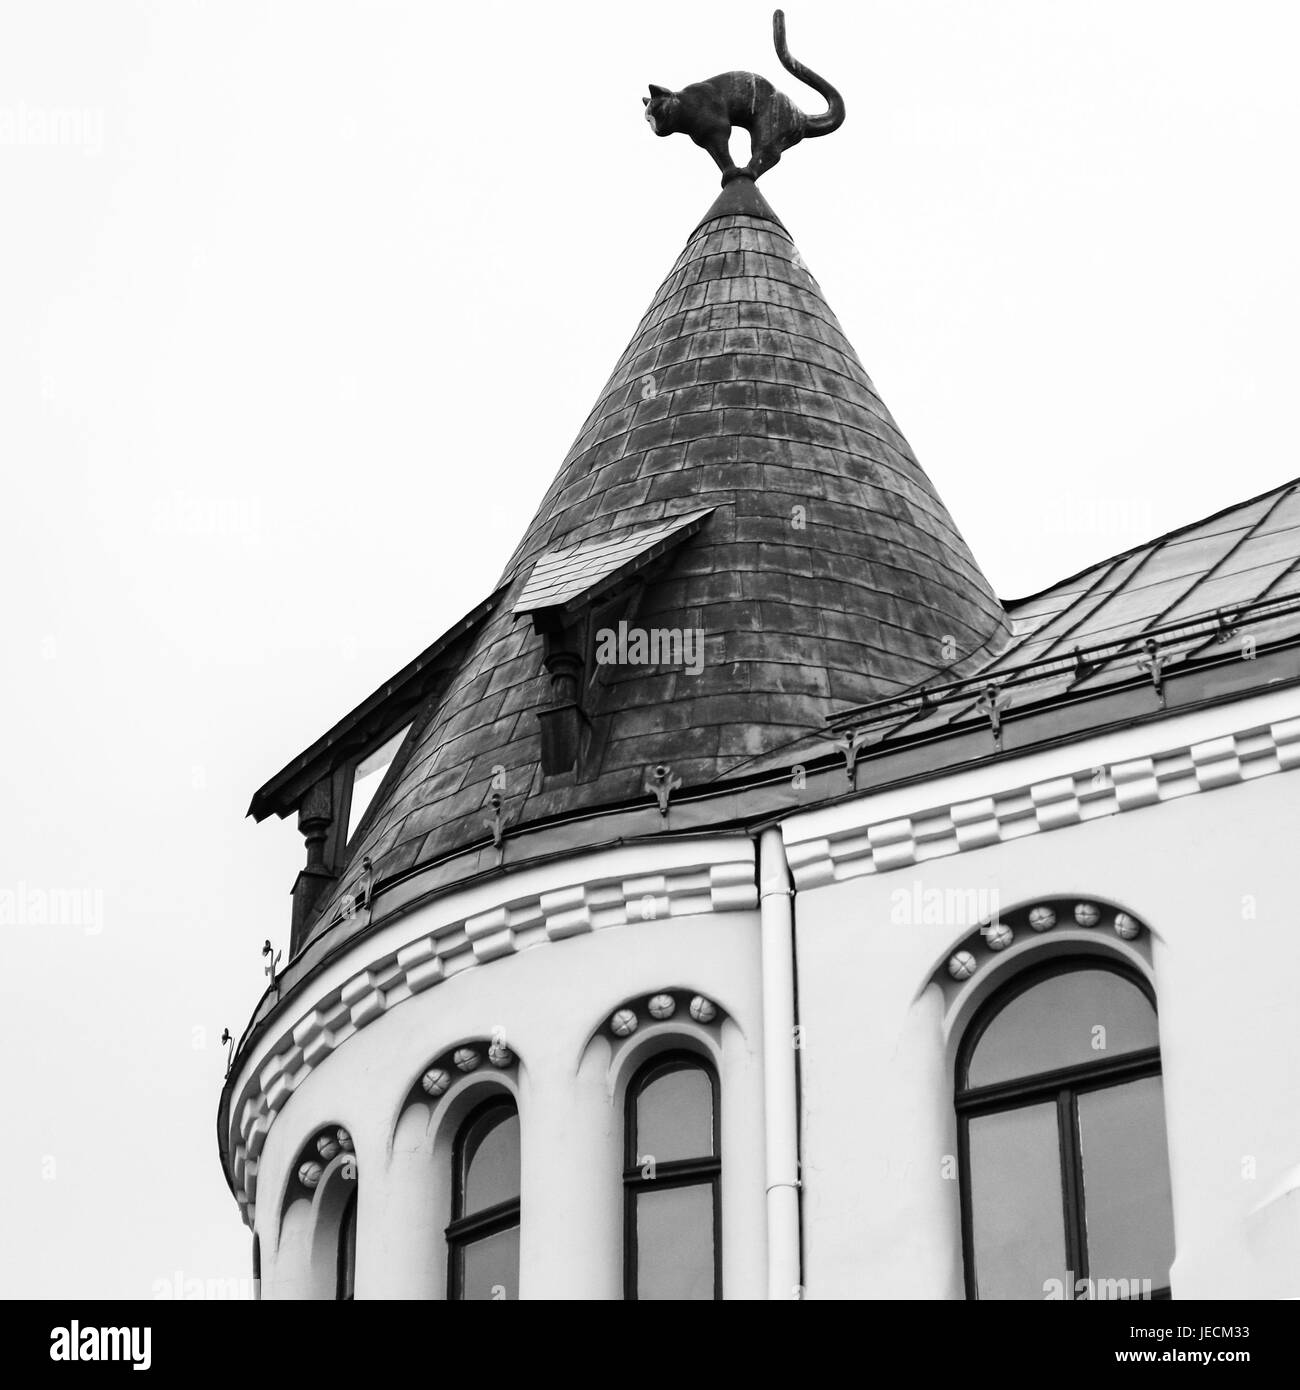 Reisen Sie nach Lettland - Katze Figur am Turm auf dem Dach des Katzenhaus  in Riga Stadt im Herbst. Errichtet im Jahre 1909, entworfen vom Architekten  Friedrich Scheffe Stockfotografie - Alamy